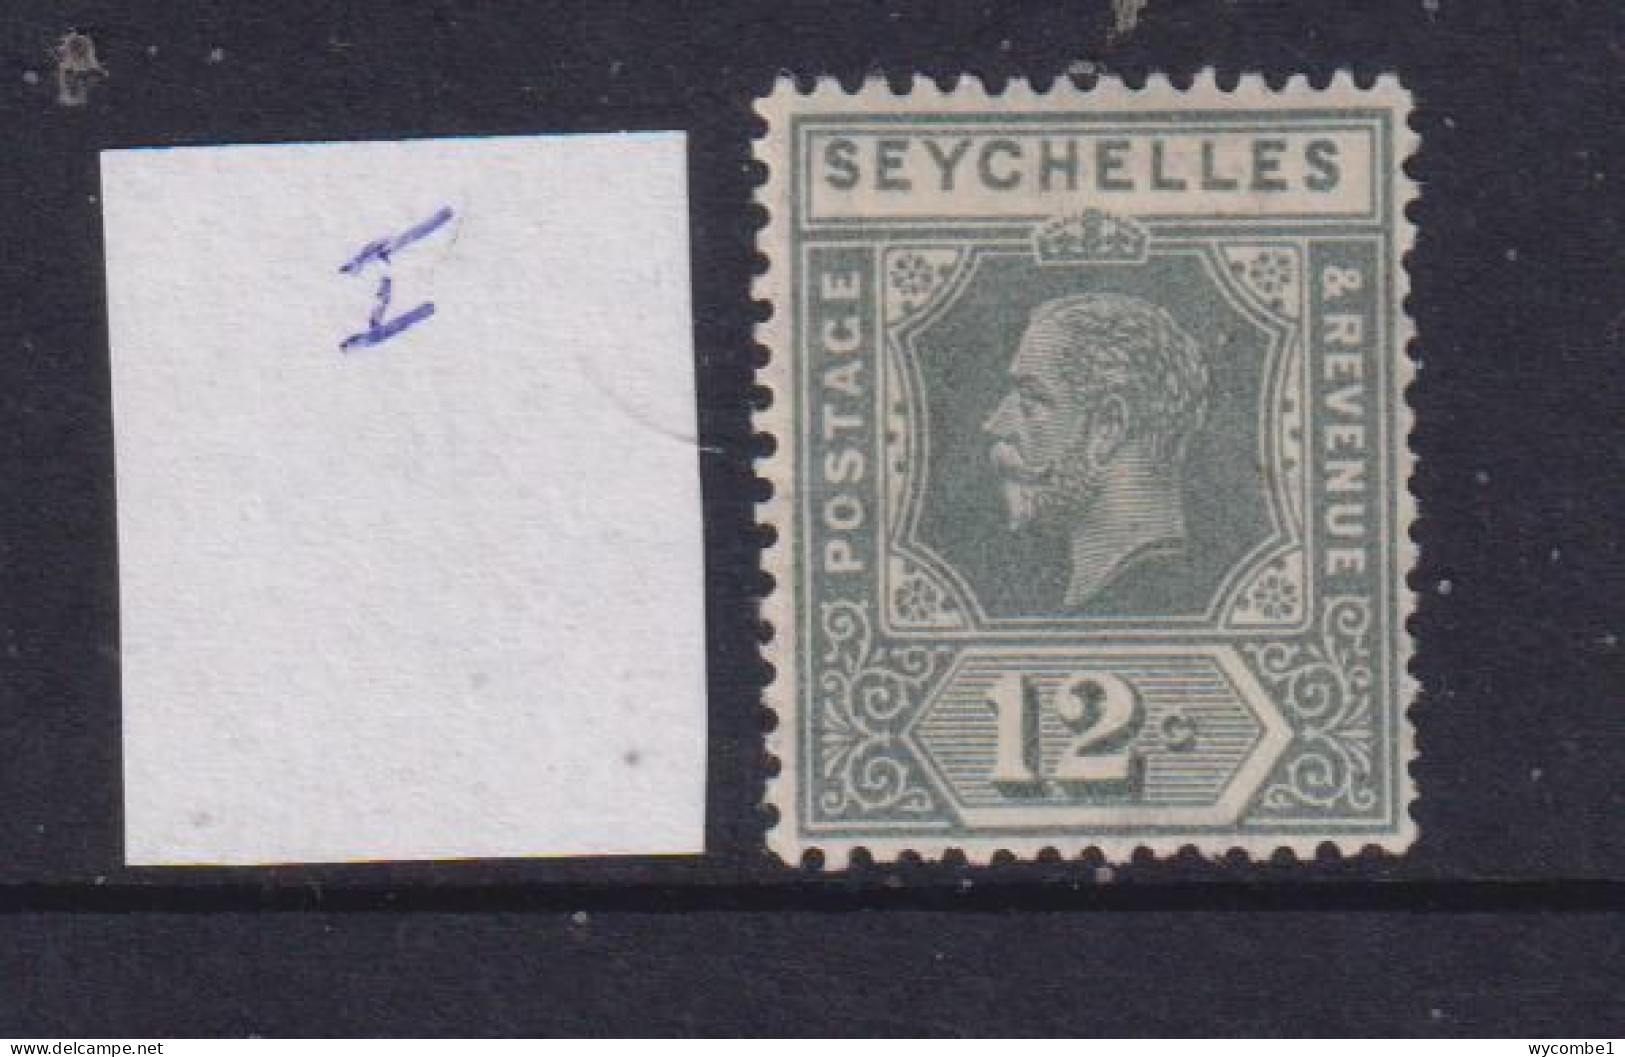 SEYCHELLES  - 1921-32  George V Wm Mult Script CA 12c Die1 Hinged Mint - Seychelles (...-1976)